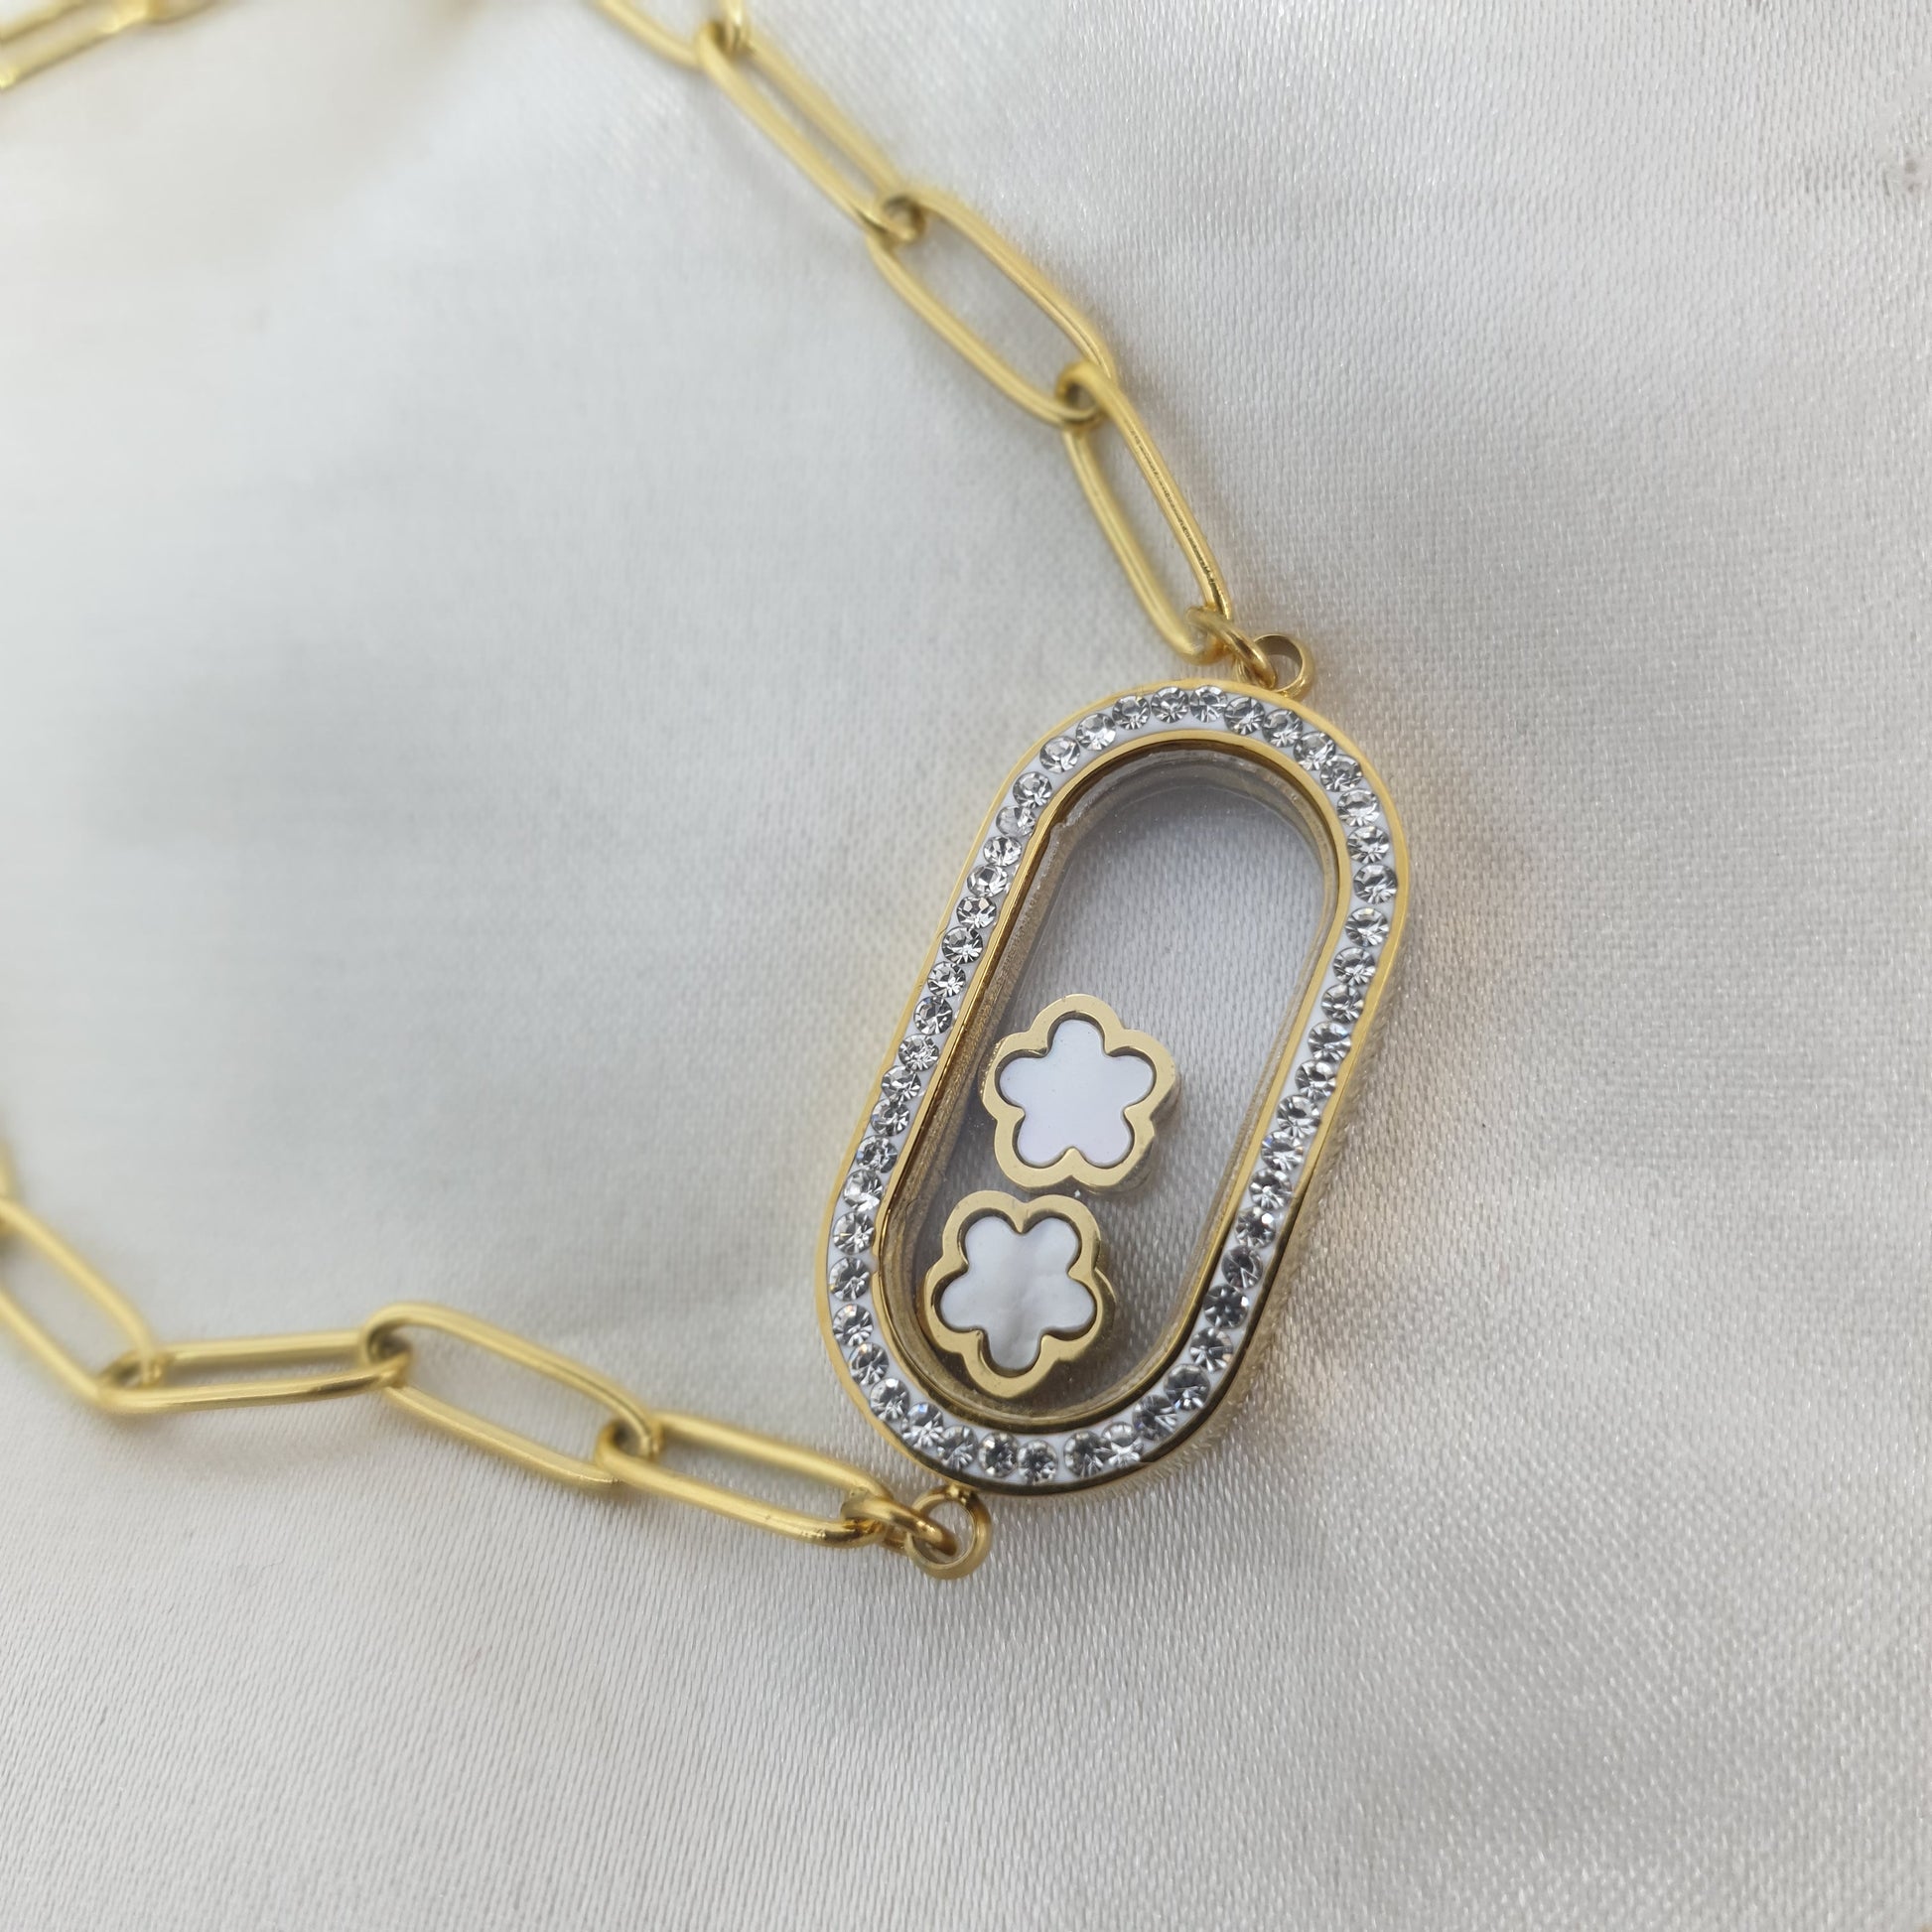 Bracelet chaîne dorée, strass et fleurs acier inoxydable FLORECITAS RéussiteActif